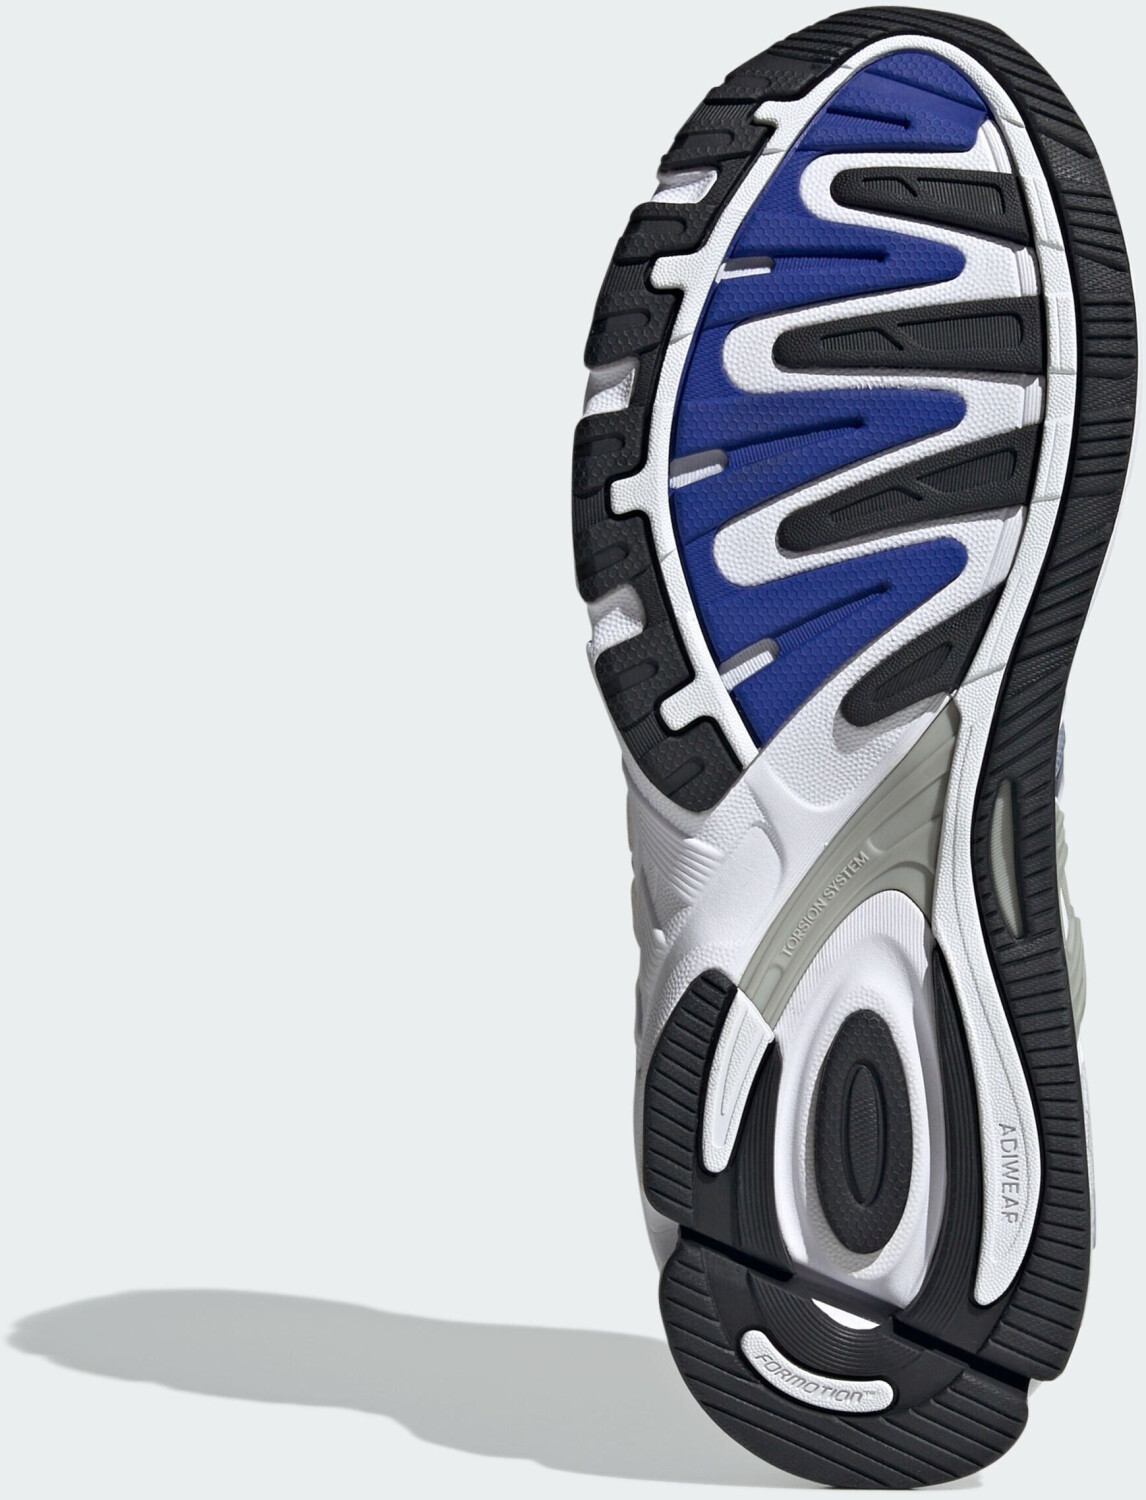 Adidas Response CL cloud black/lucid 84,90 bei Preisvergleich ab white/core | blue (ID4596) €